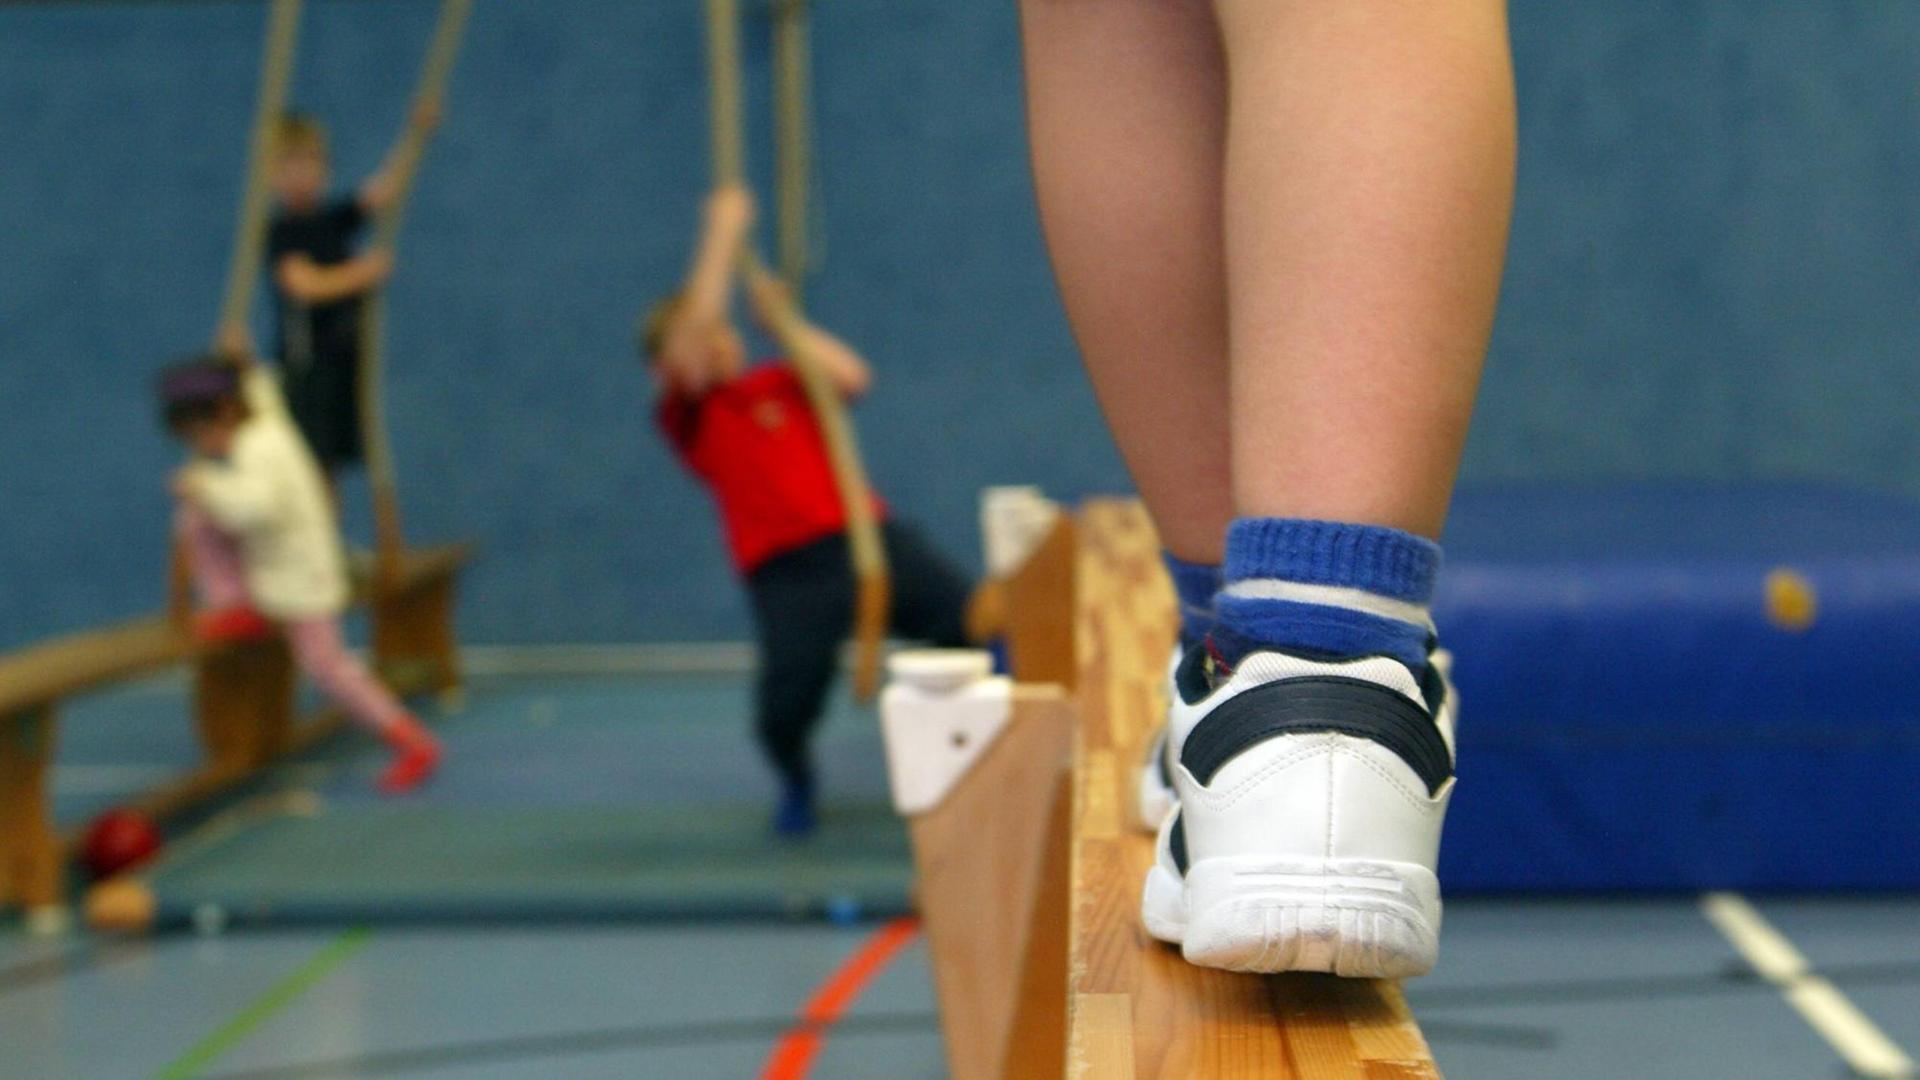 Ein Kind balanciert auf einer Bank, im Hintergrund hangeln andere Kinder während des Kinderturnens an Seilen.